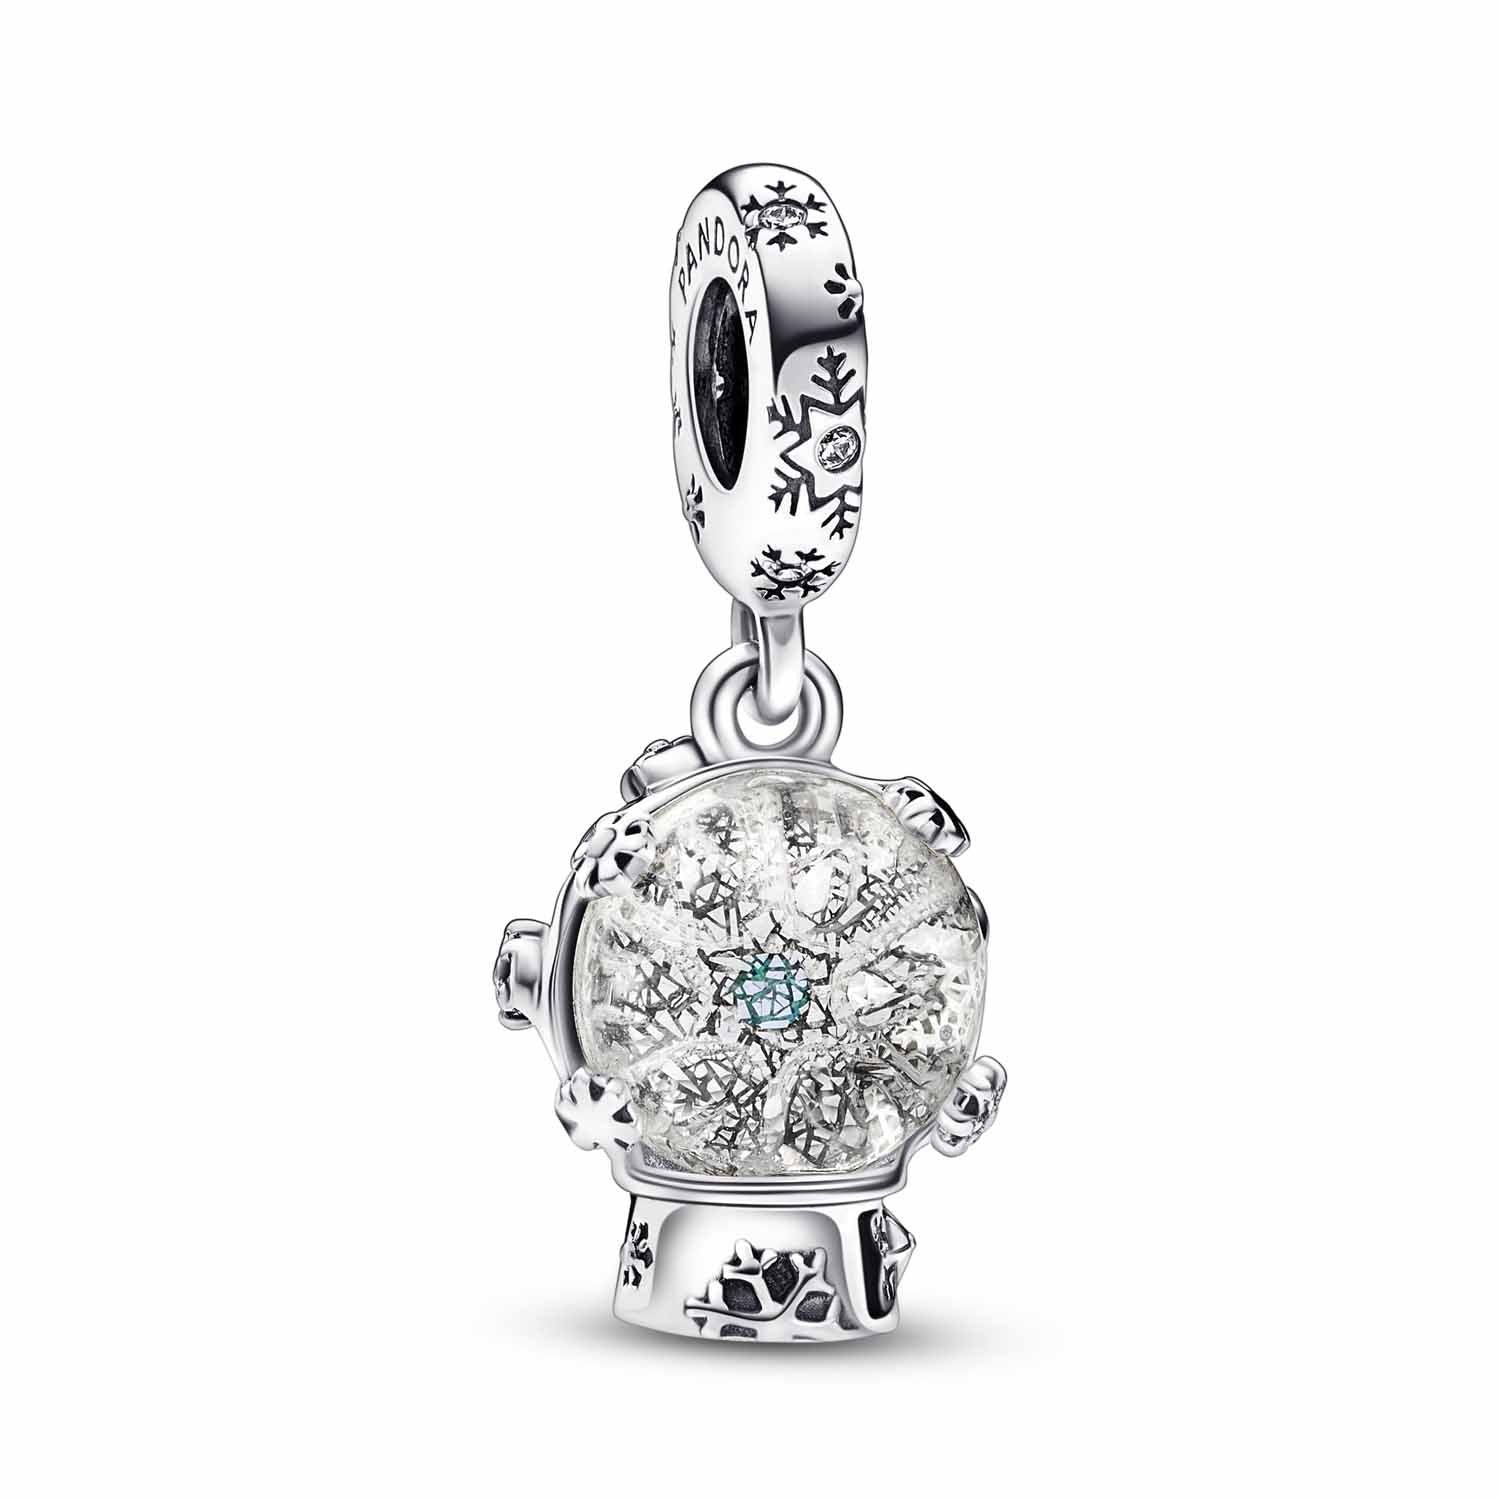 10: Pandora - Snefnug Snekugle charm sølv sterlingsølv